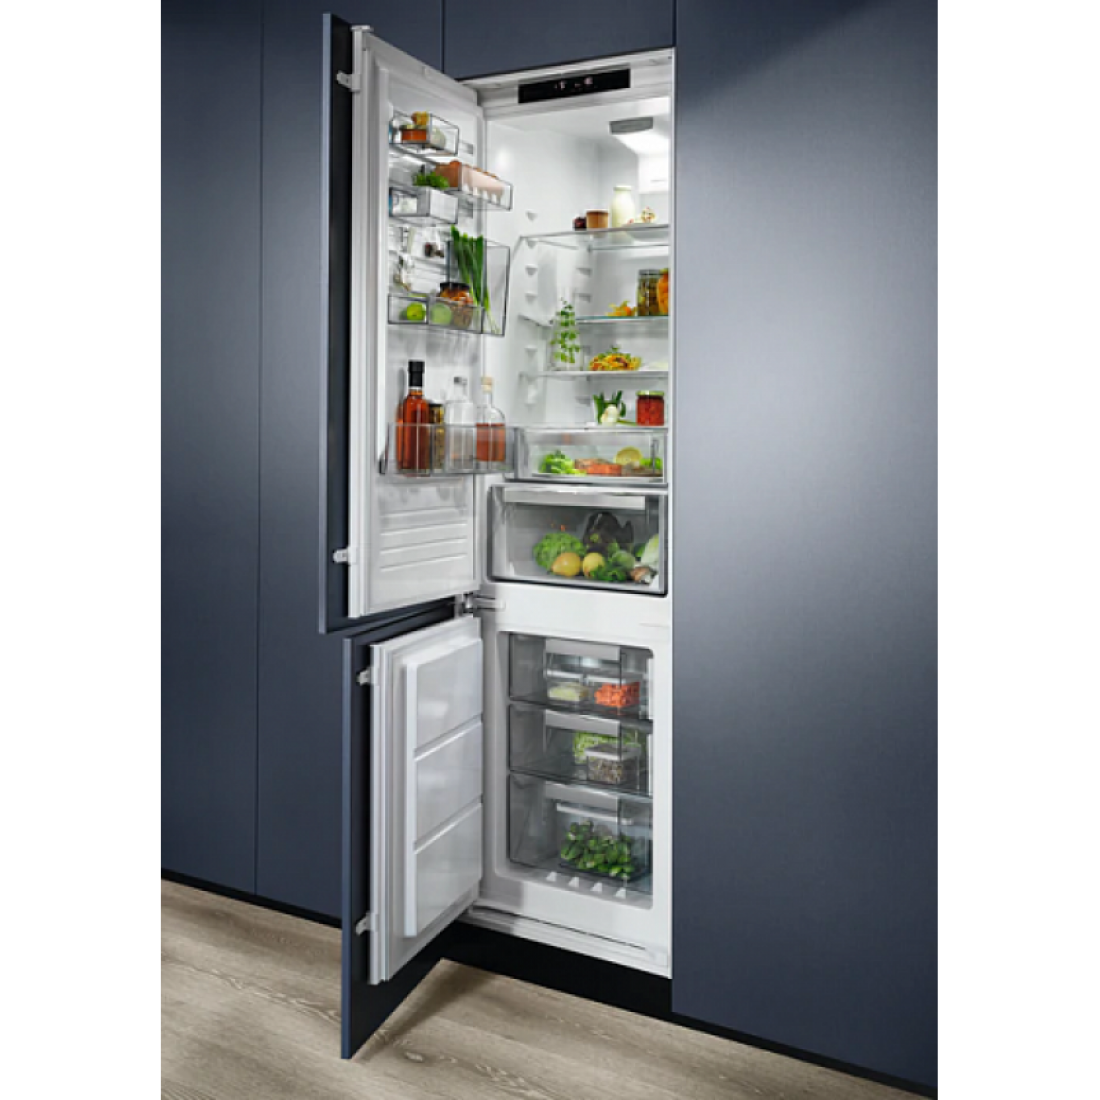 Встраиваемые холодильники ру. Электролюкс холодильник встраиваемый двухкамерный. Встроенный холодильник Электролюкс. Встраиваемый холодильник Electrolux rnt6tf18s1. Встраиваемый холодильник Electrolux lnt7tf18s.